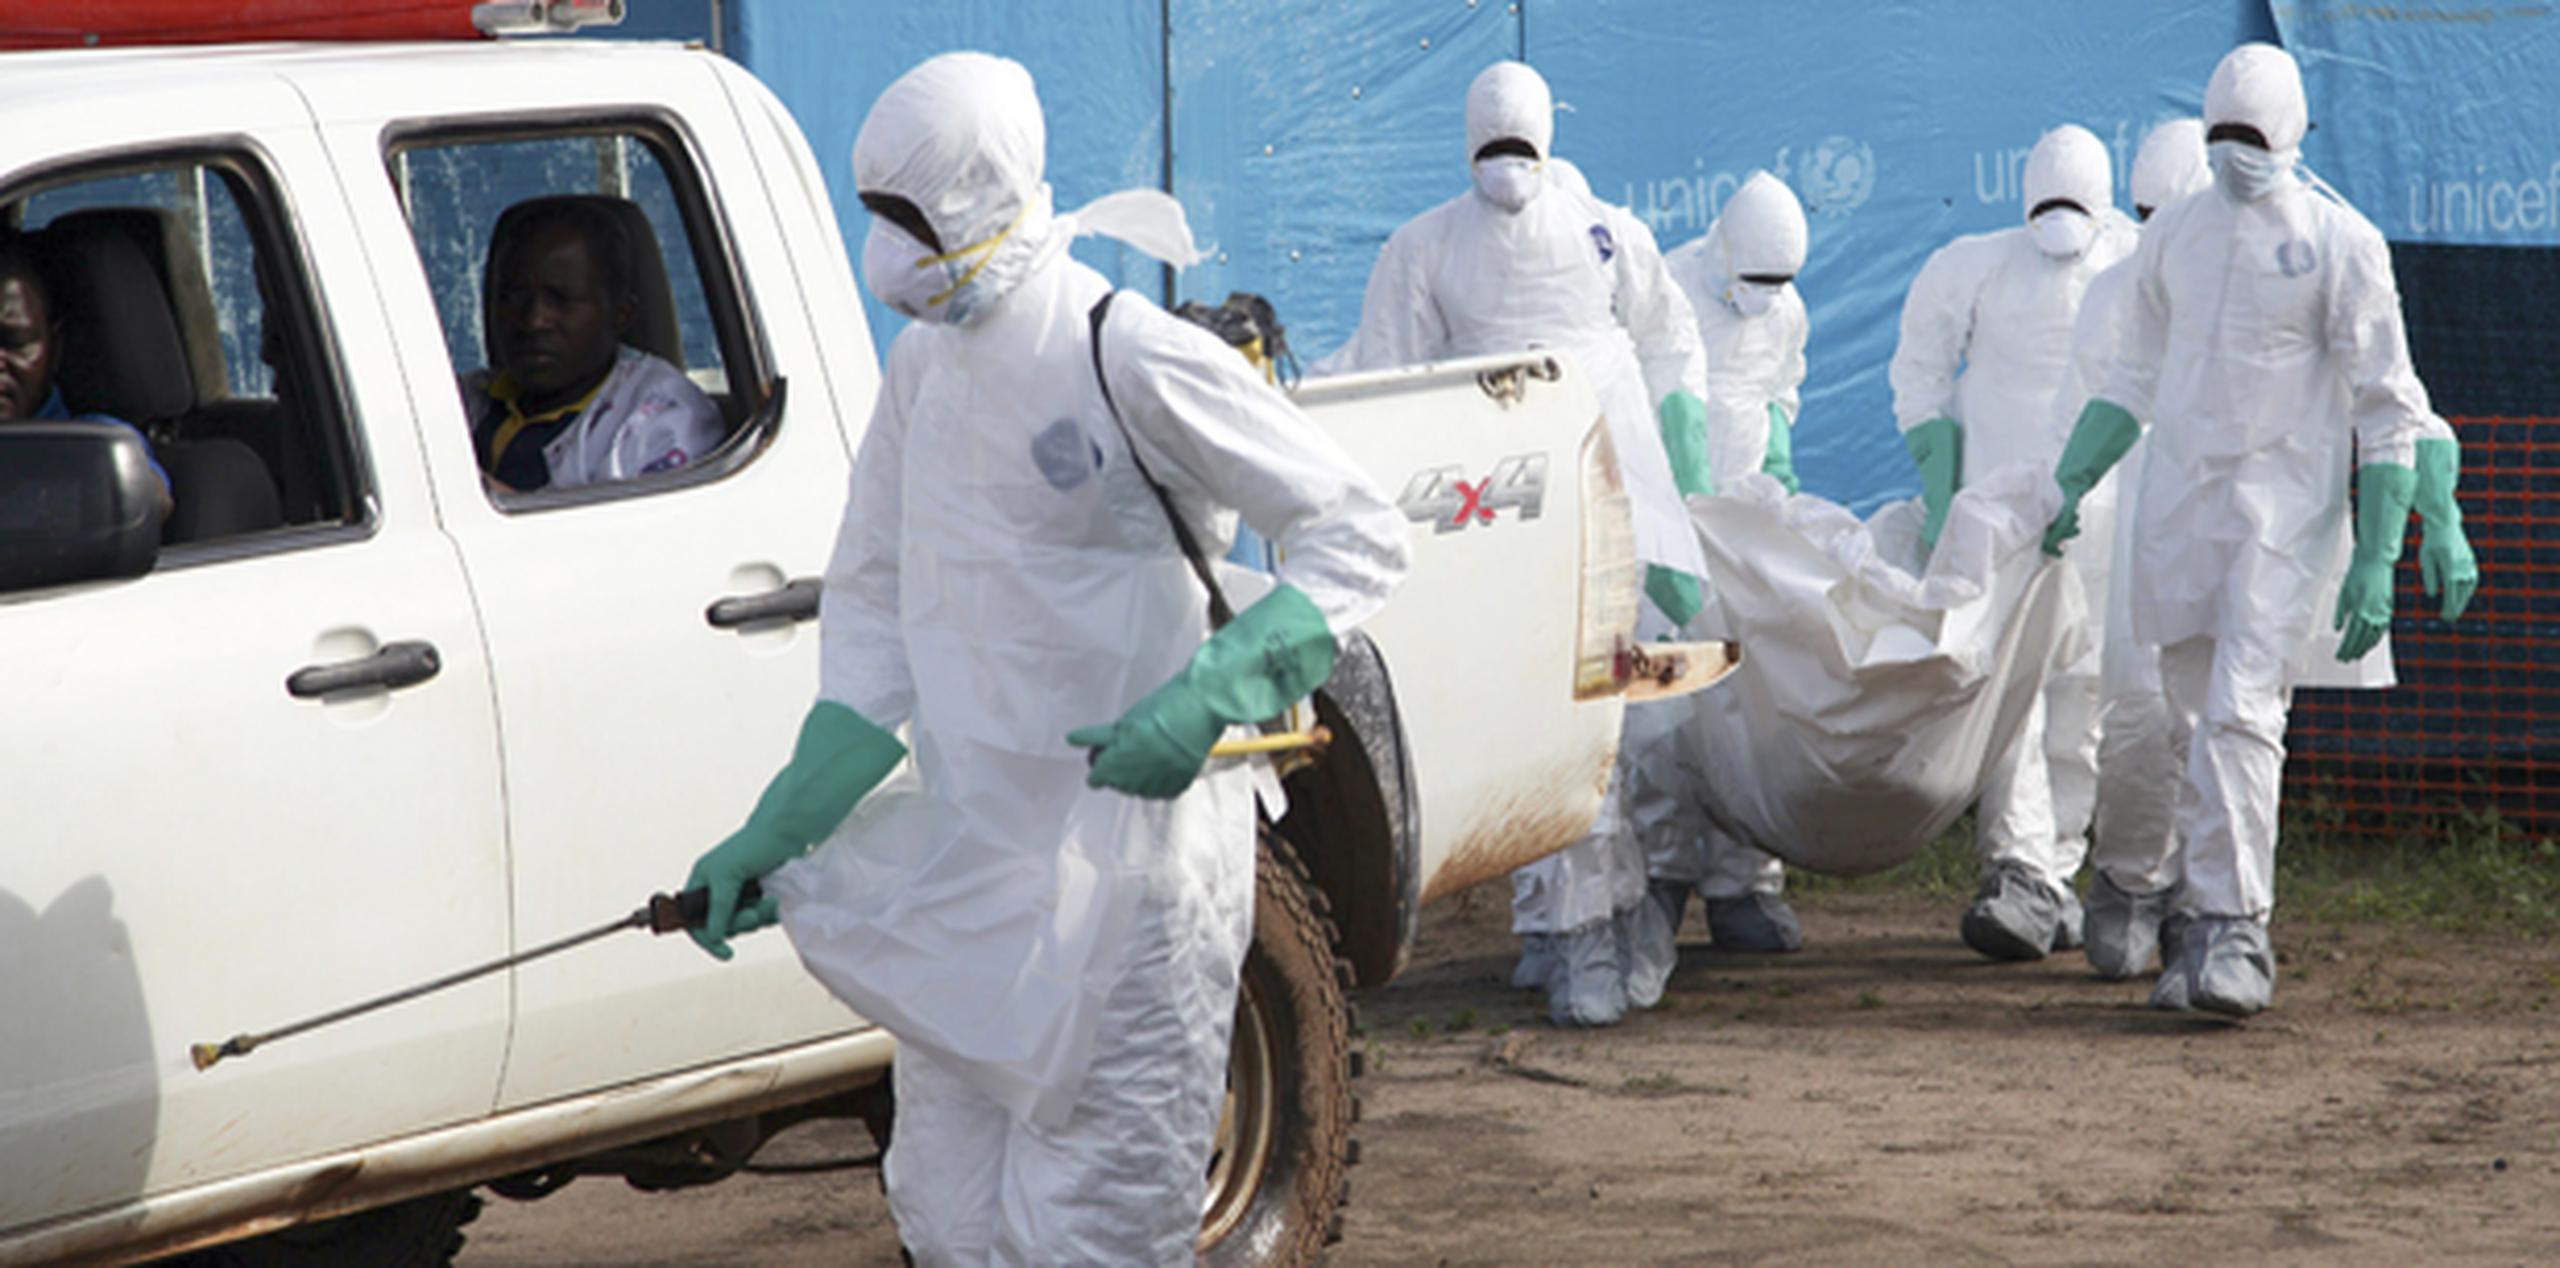 La comunidad internacional ya empieza a contemplar la extensión del ébola como un peligro real. (EFE)